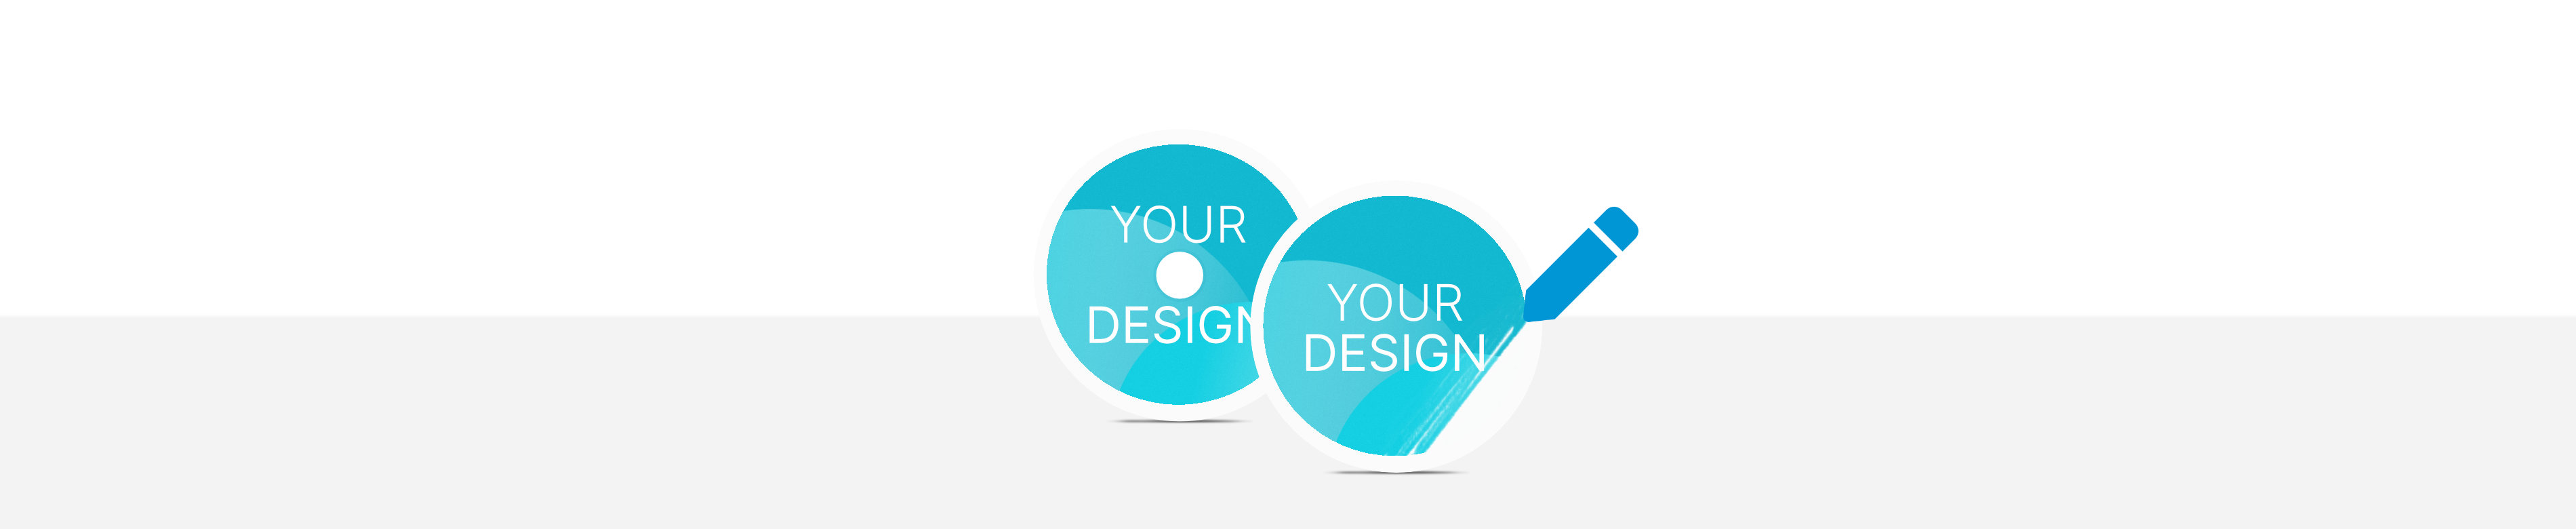 Zwei Industrie Münzen, eine mit Lochung, mit der Aufschrift "Your Design"